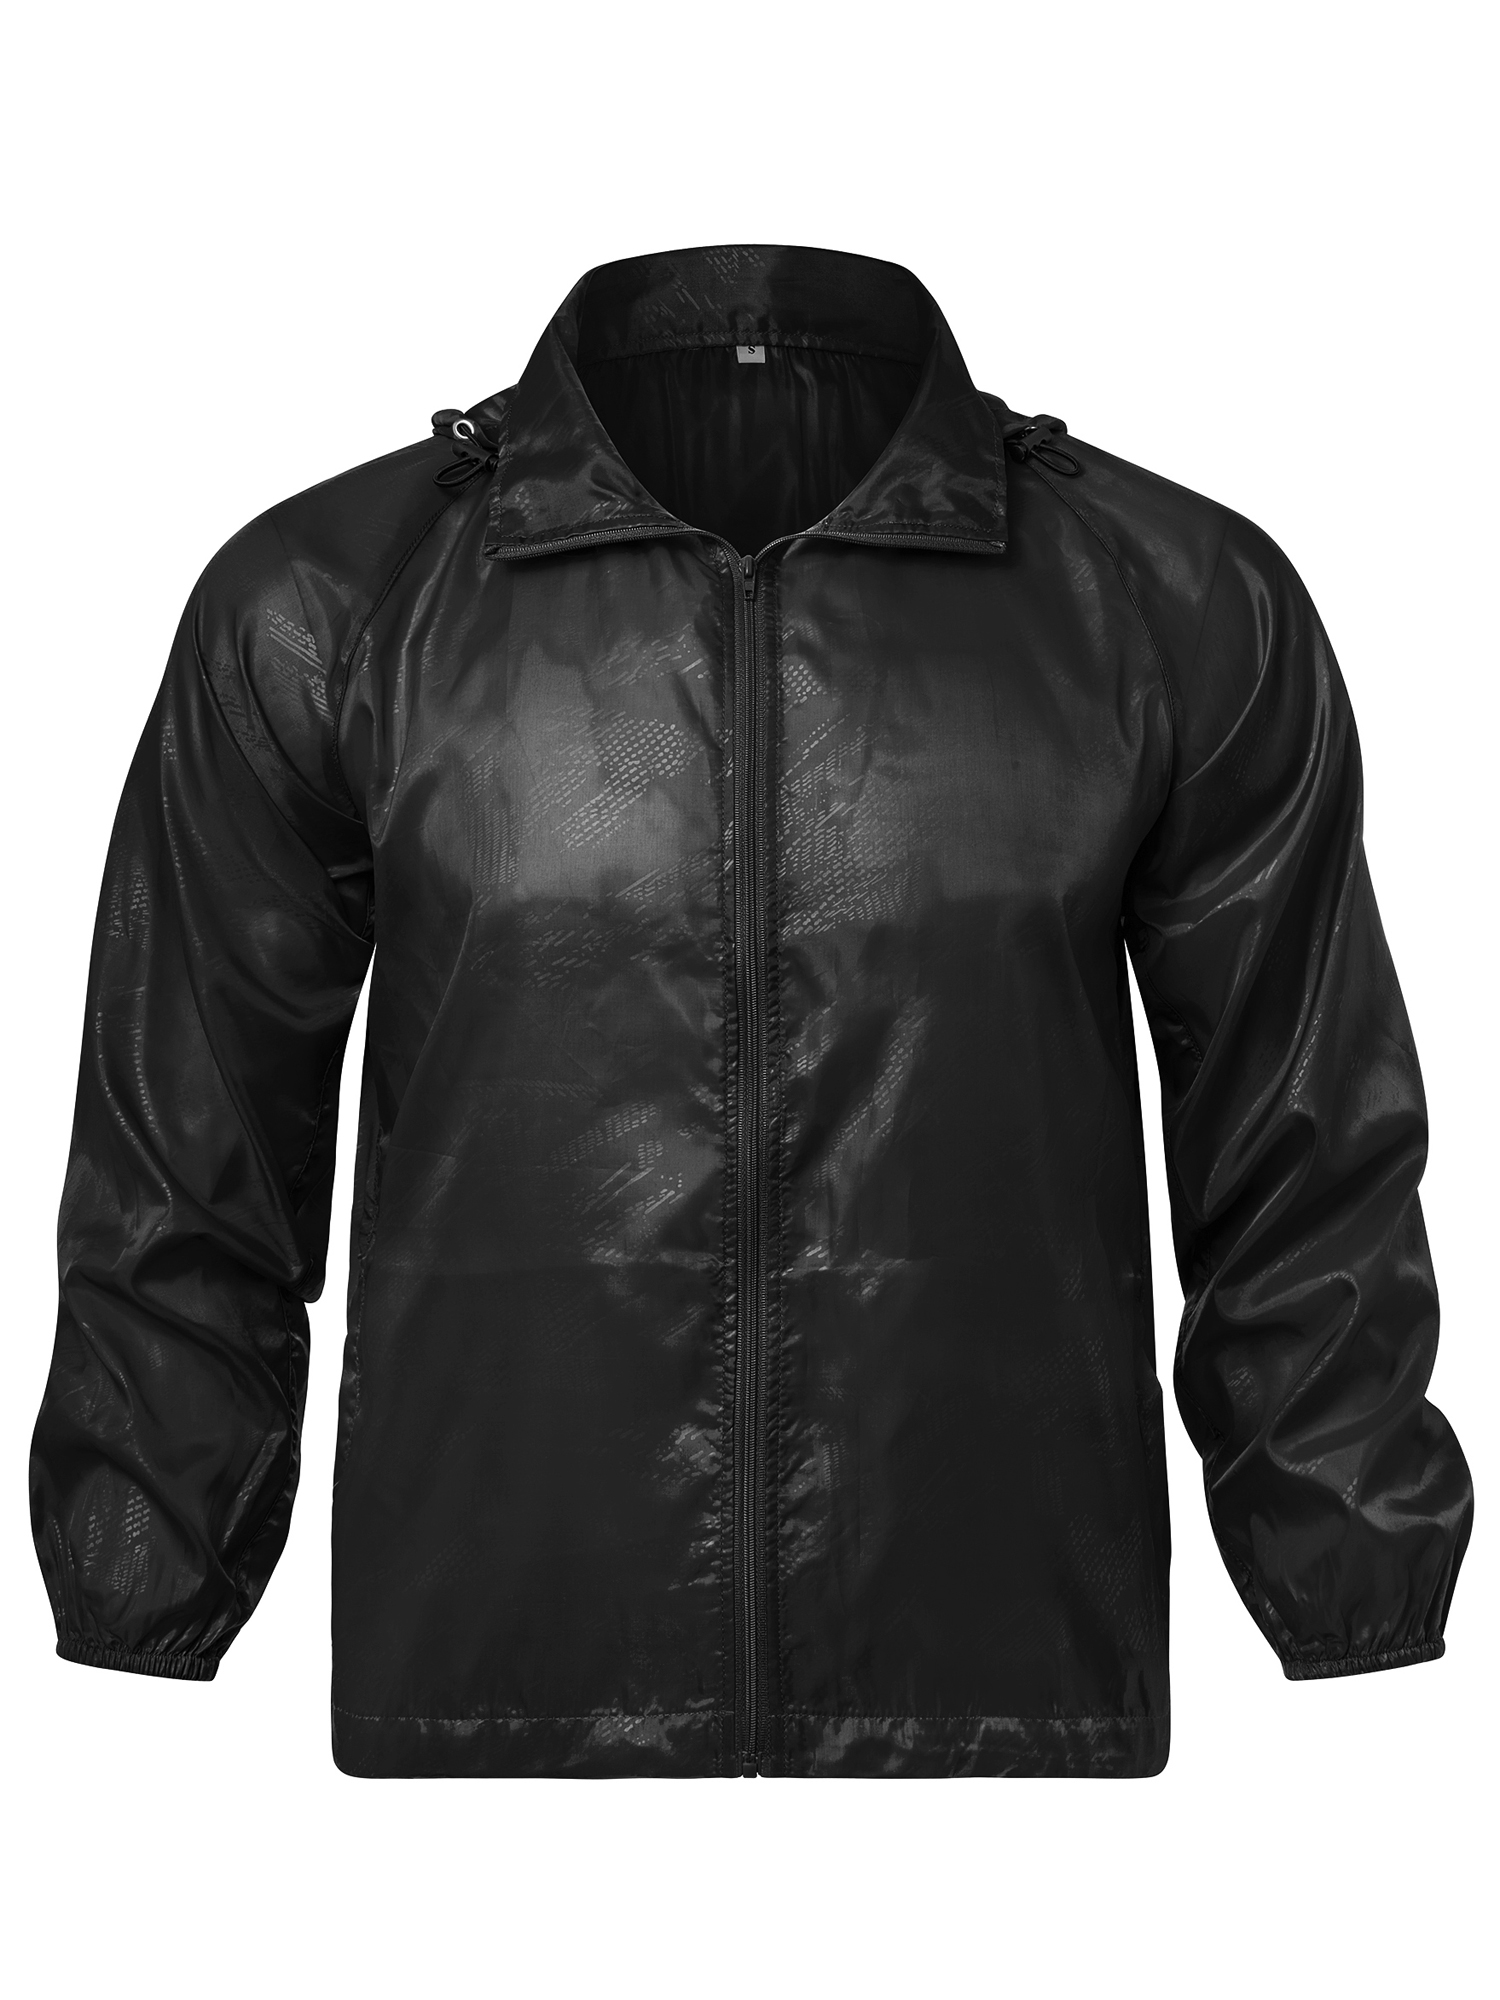 LELINTA Women Nylon Windbreaker Jacket Sport Casual Lightweight Zipper Hooded Outdoor Jacket, Black/ Royal Blue - image 5 of 9